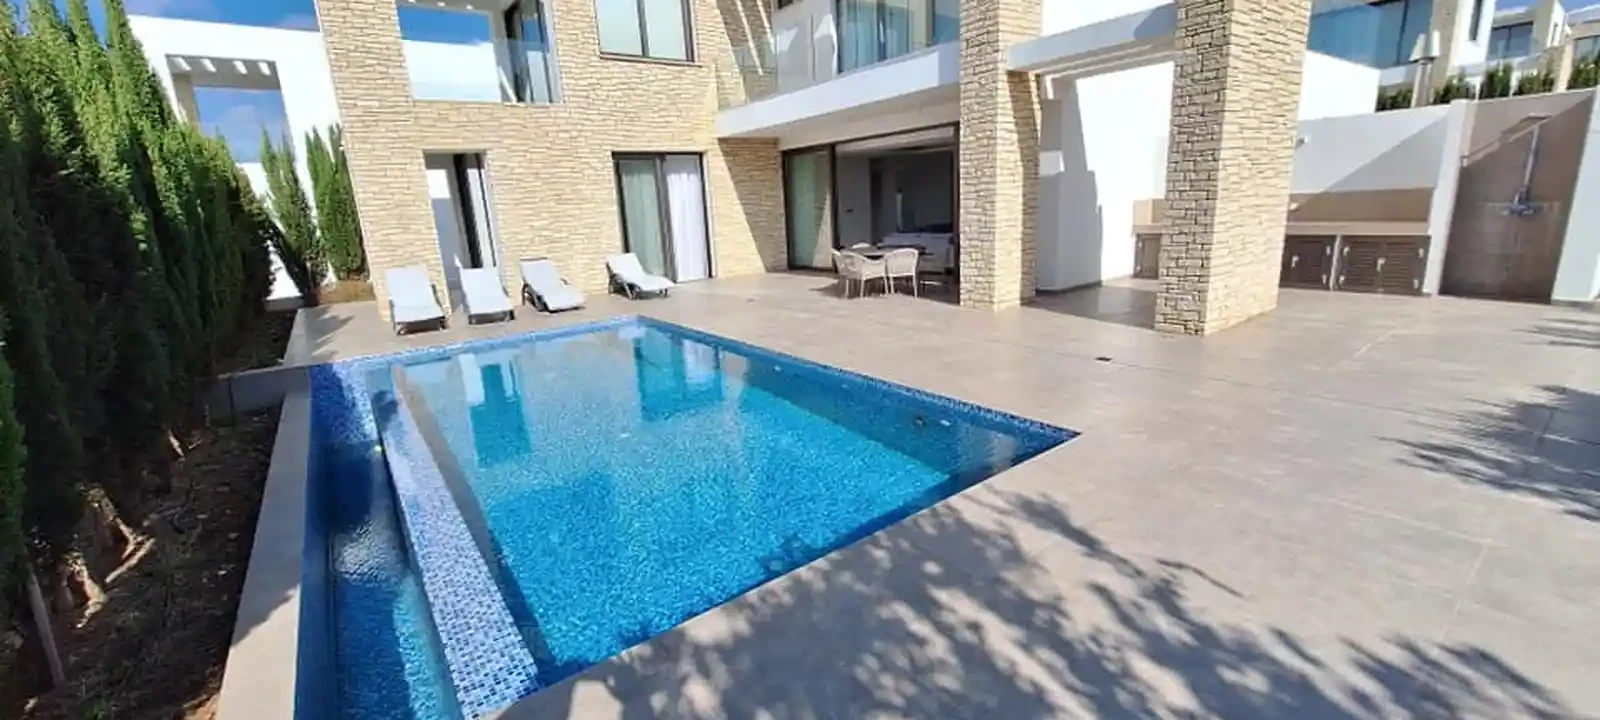 4-bedroom villa to rent €5.000, image 1